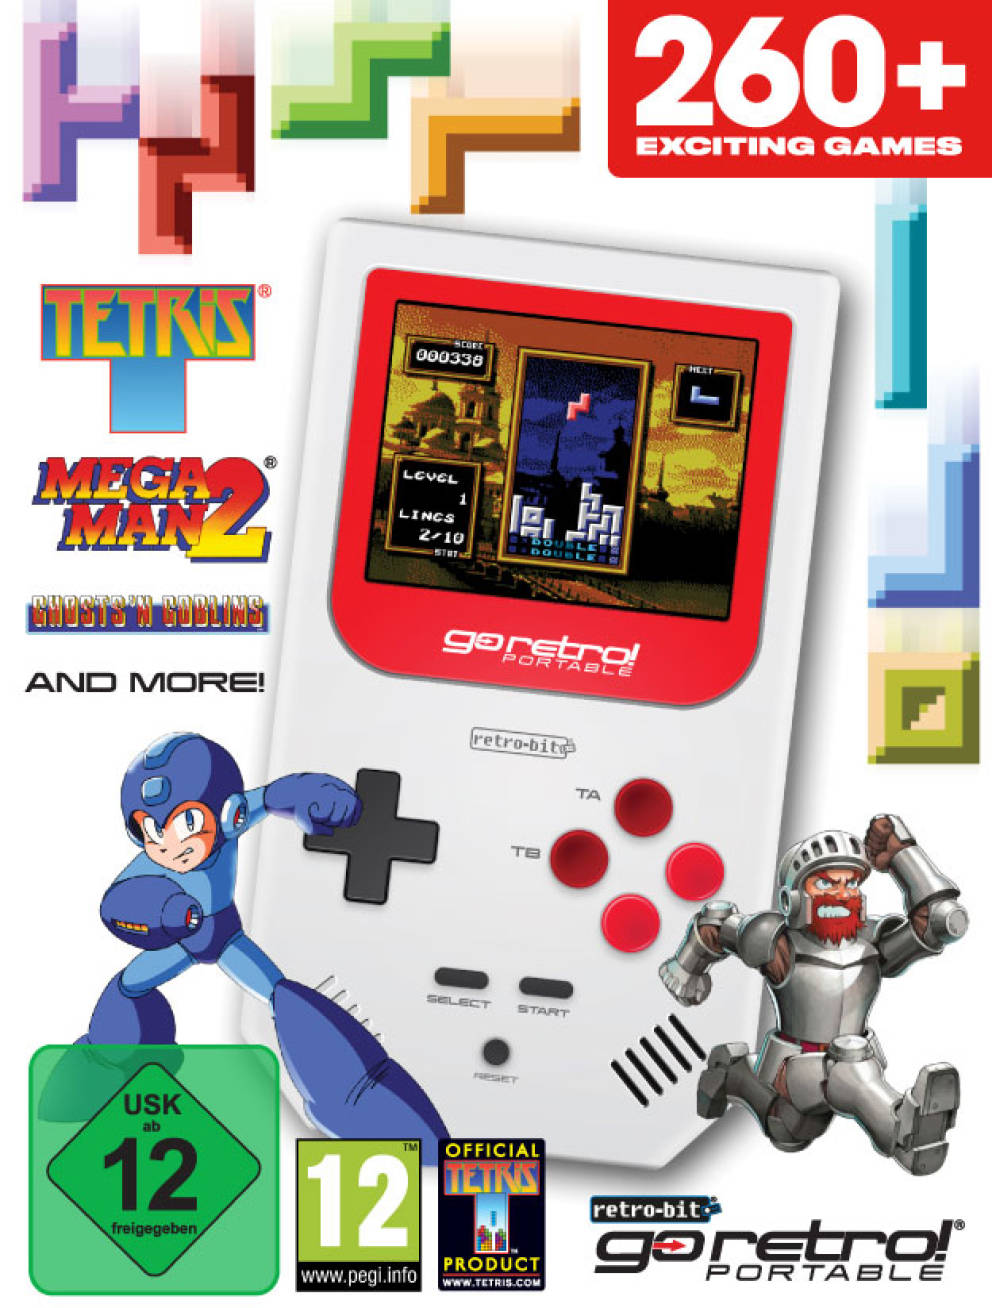 Go Retro! Portable, console portatile retrà in stile Game Boy con accesso a 260 giochi 1